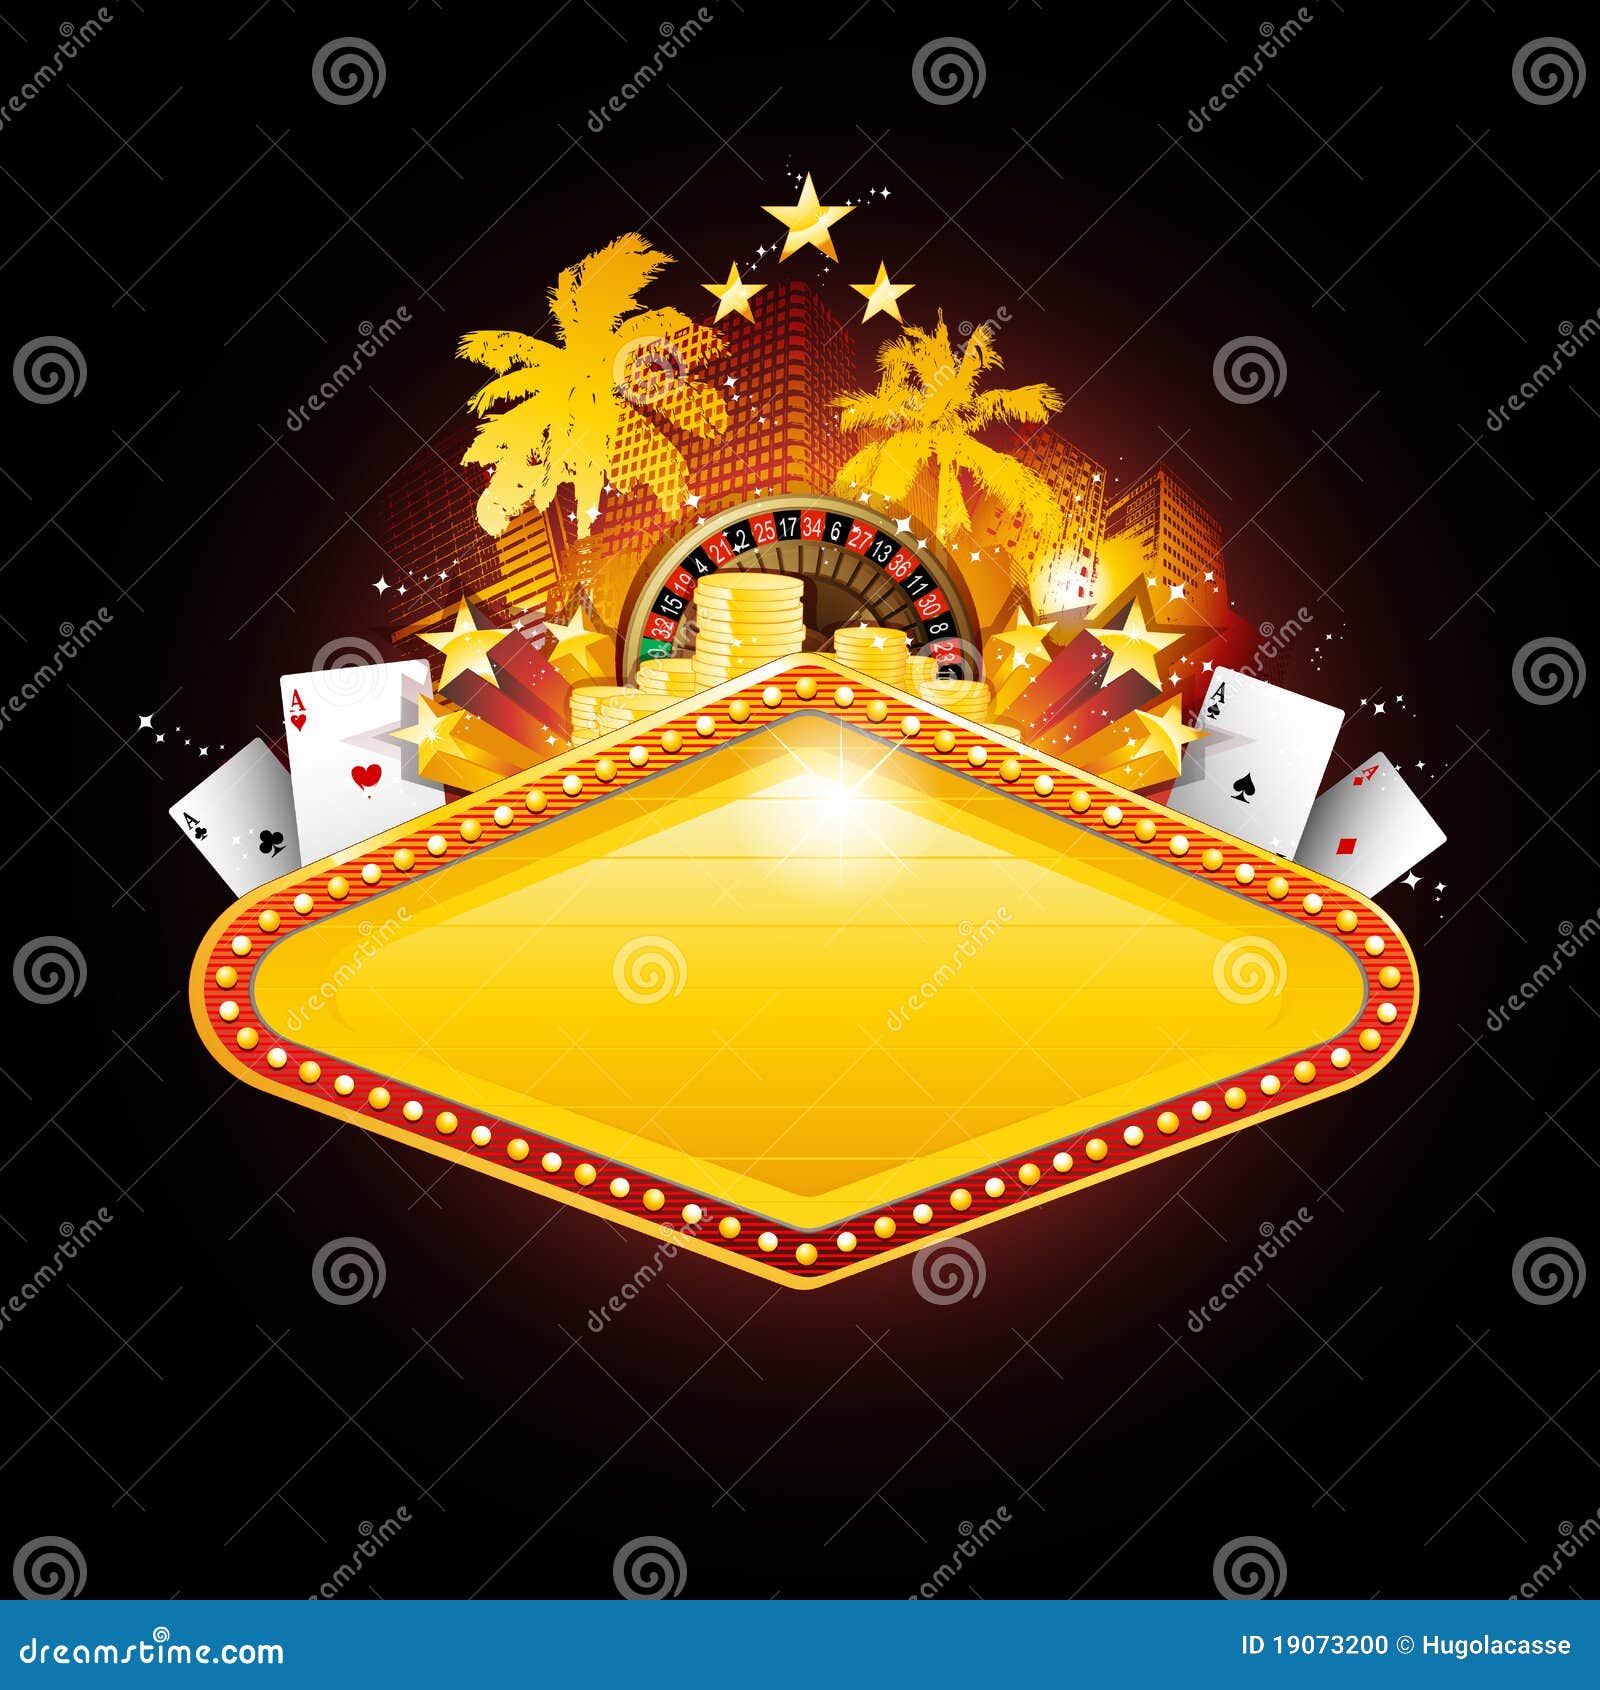 las vegas casino sign